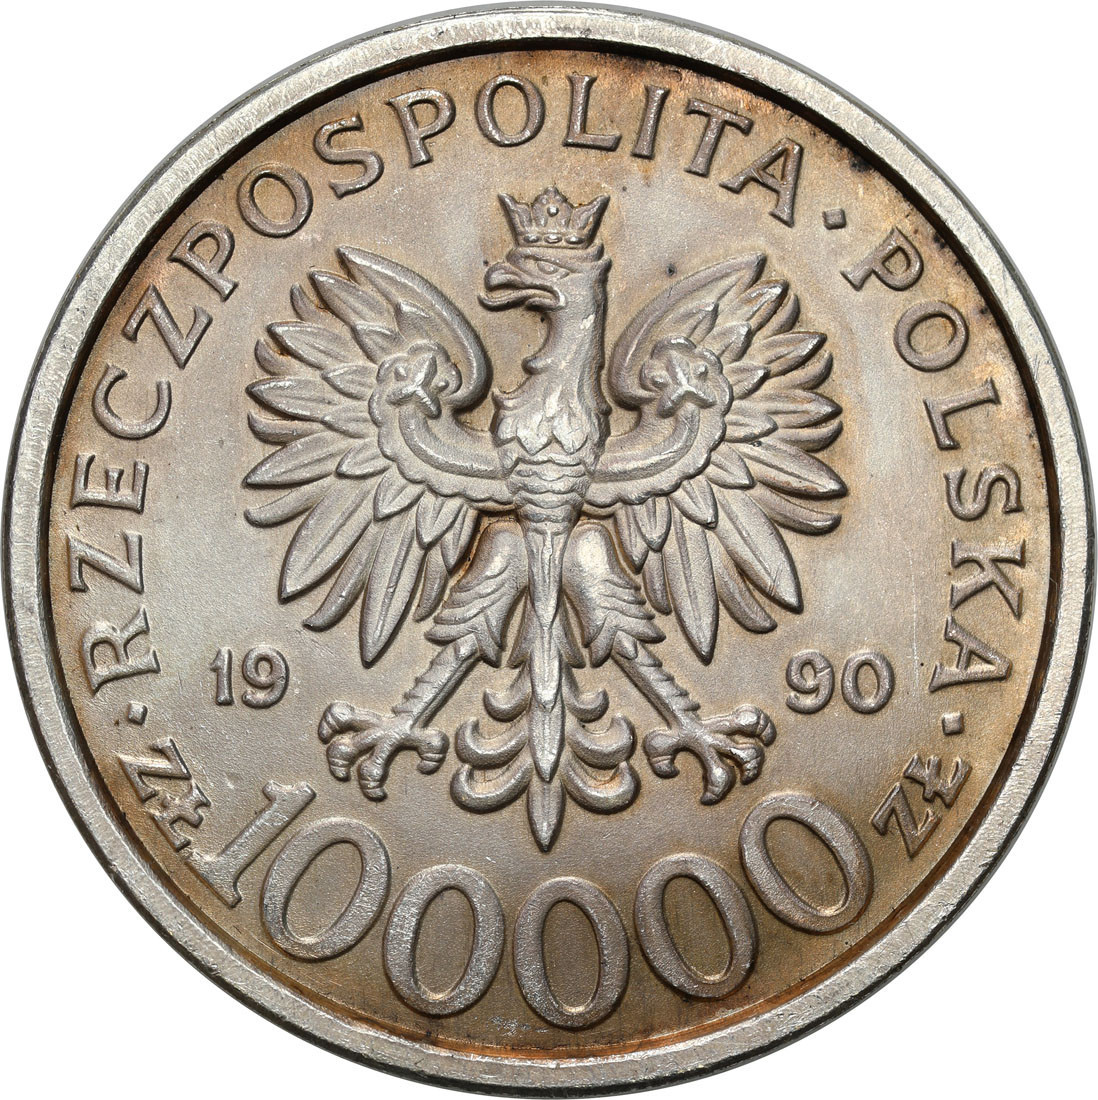 III RP. 100 000 złotych 1990 Solidarność typ B – Rzadkie